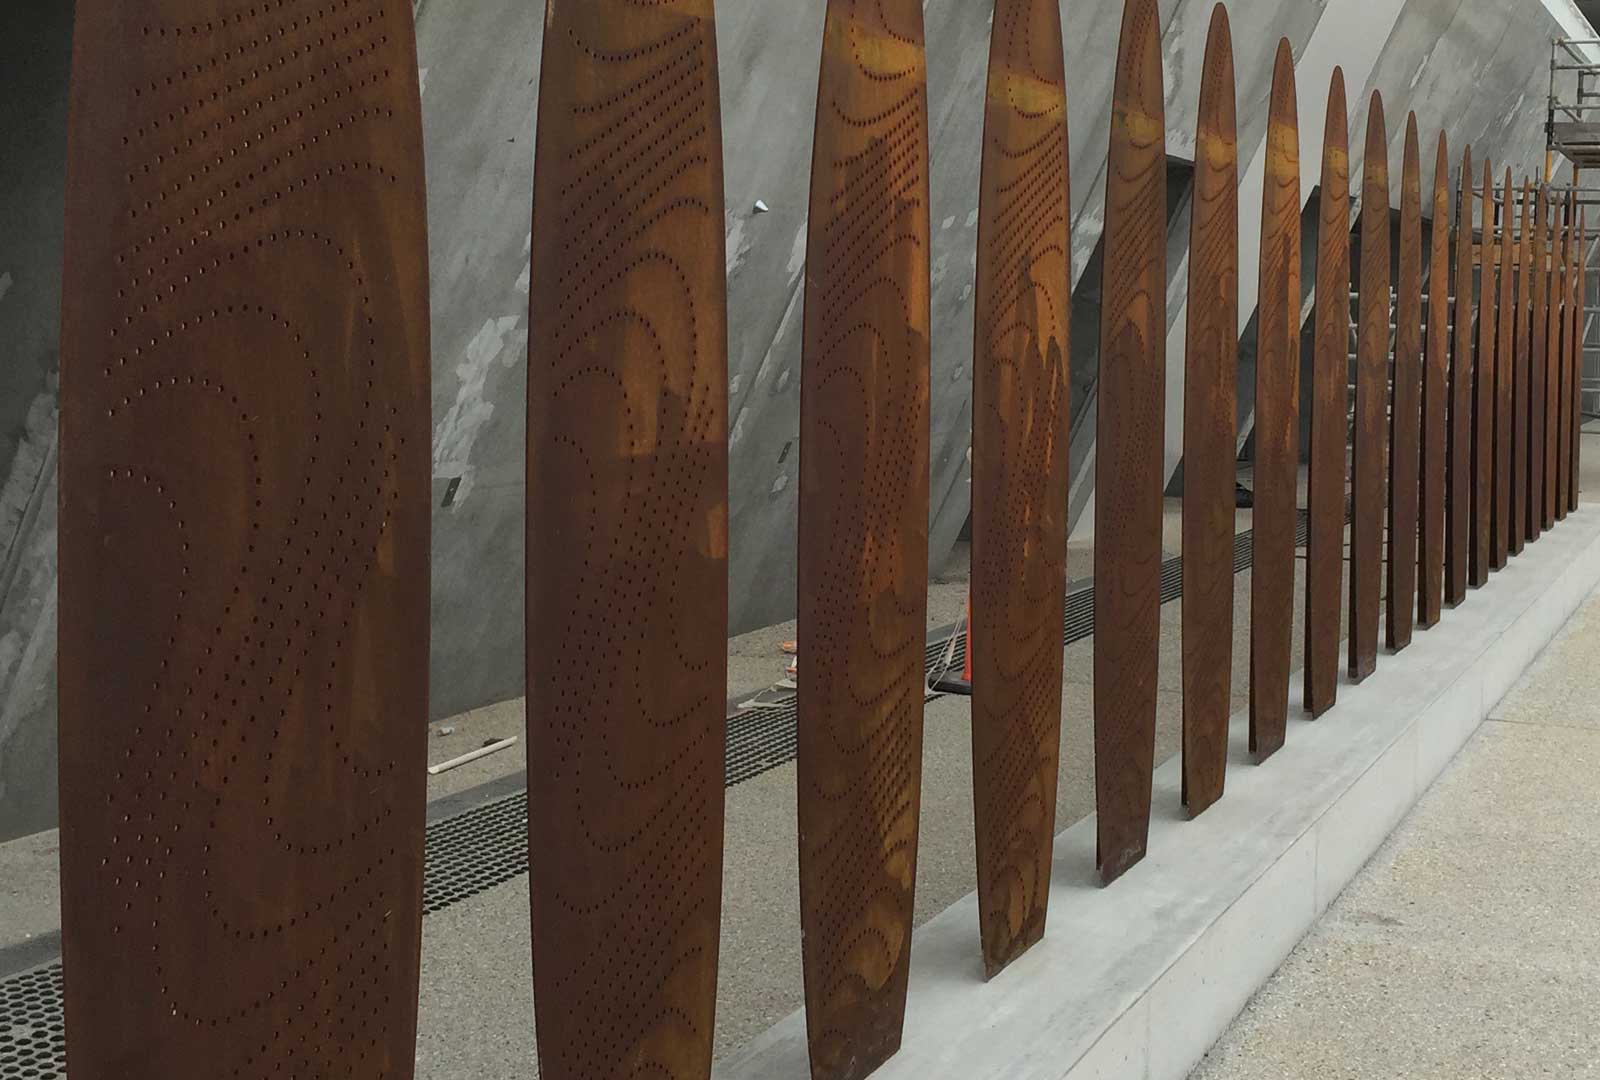 Surf Board Art Sculpture